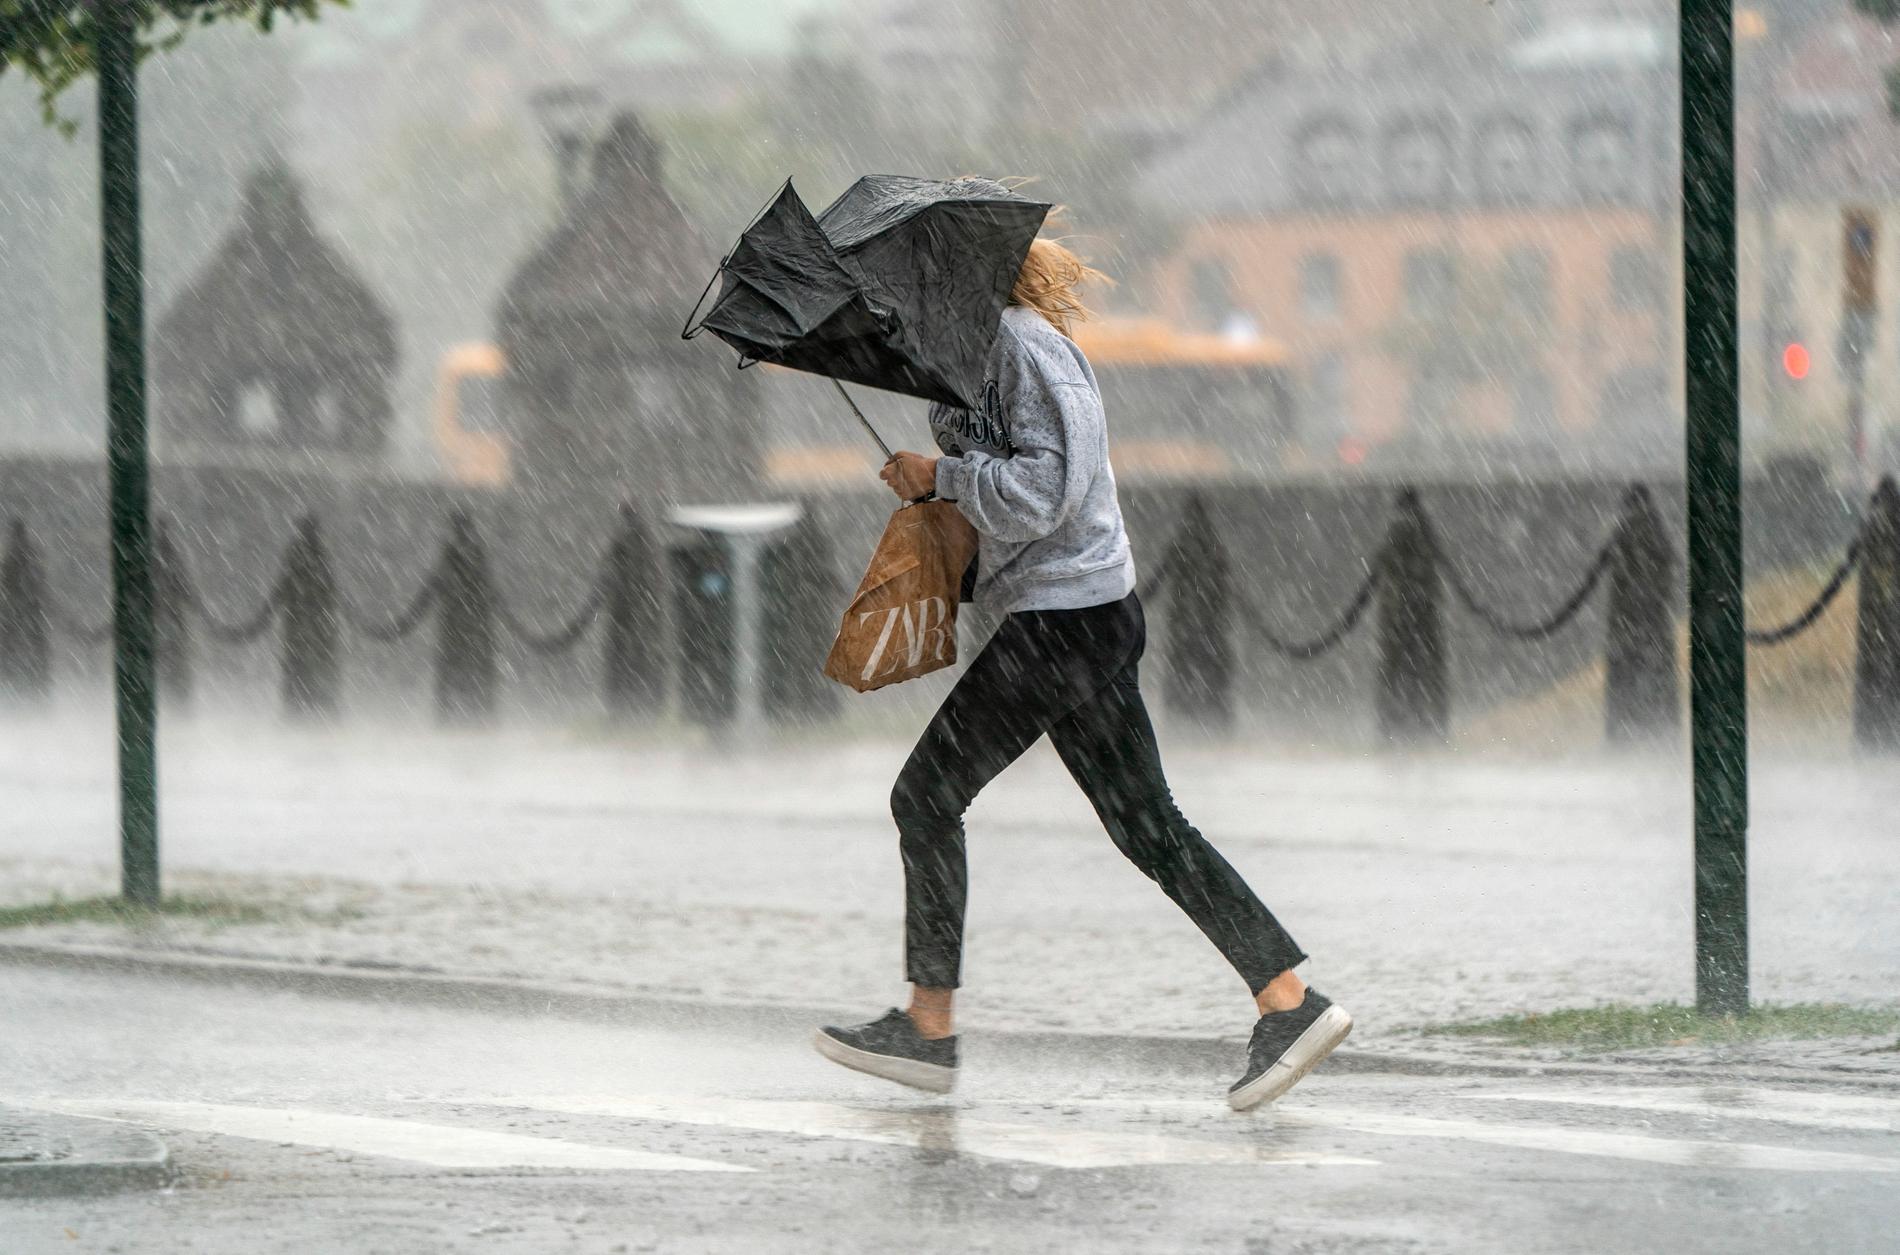 – Det kan bli kraftigt regn med inslag av åska. Det ökar risken för översvämningar, säger Meteorologen Mikael Luhr.